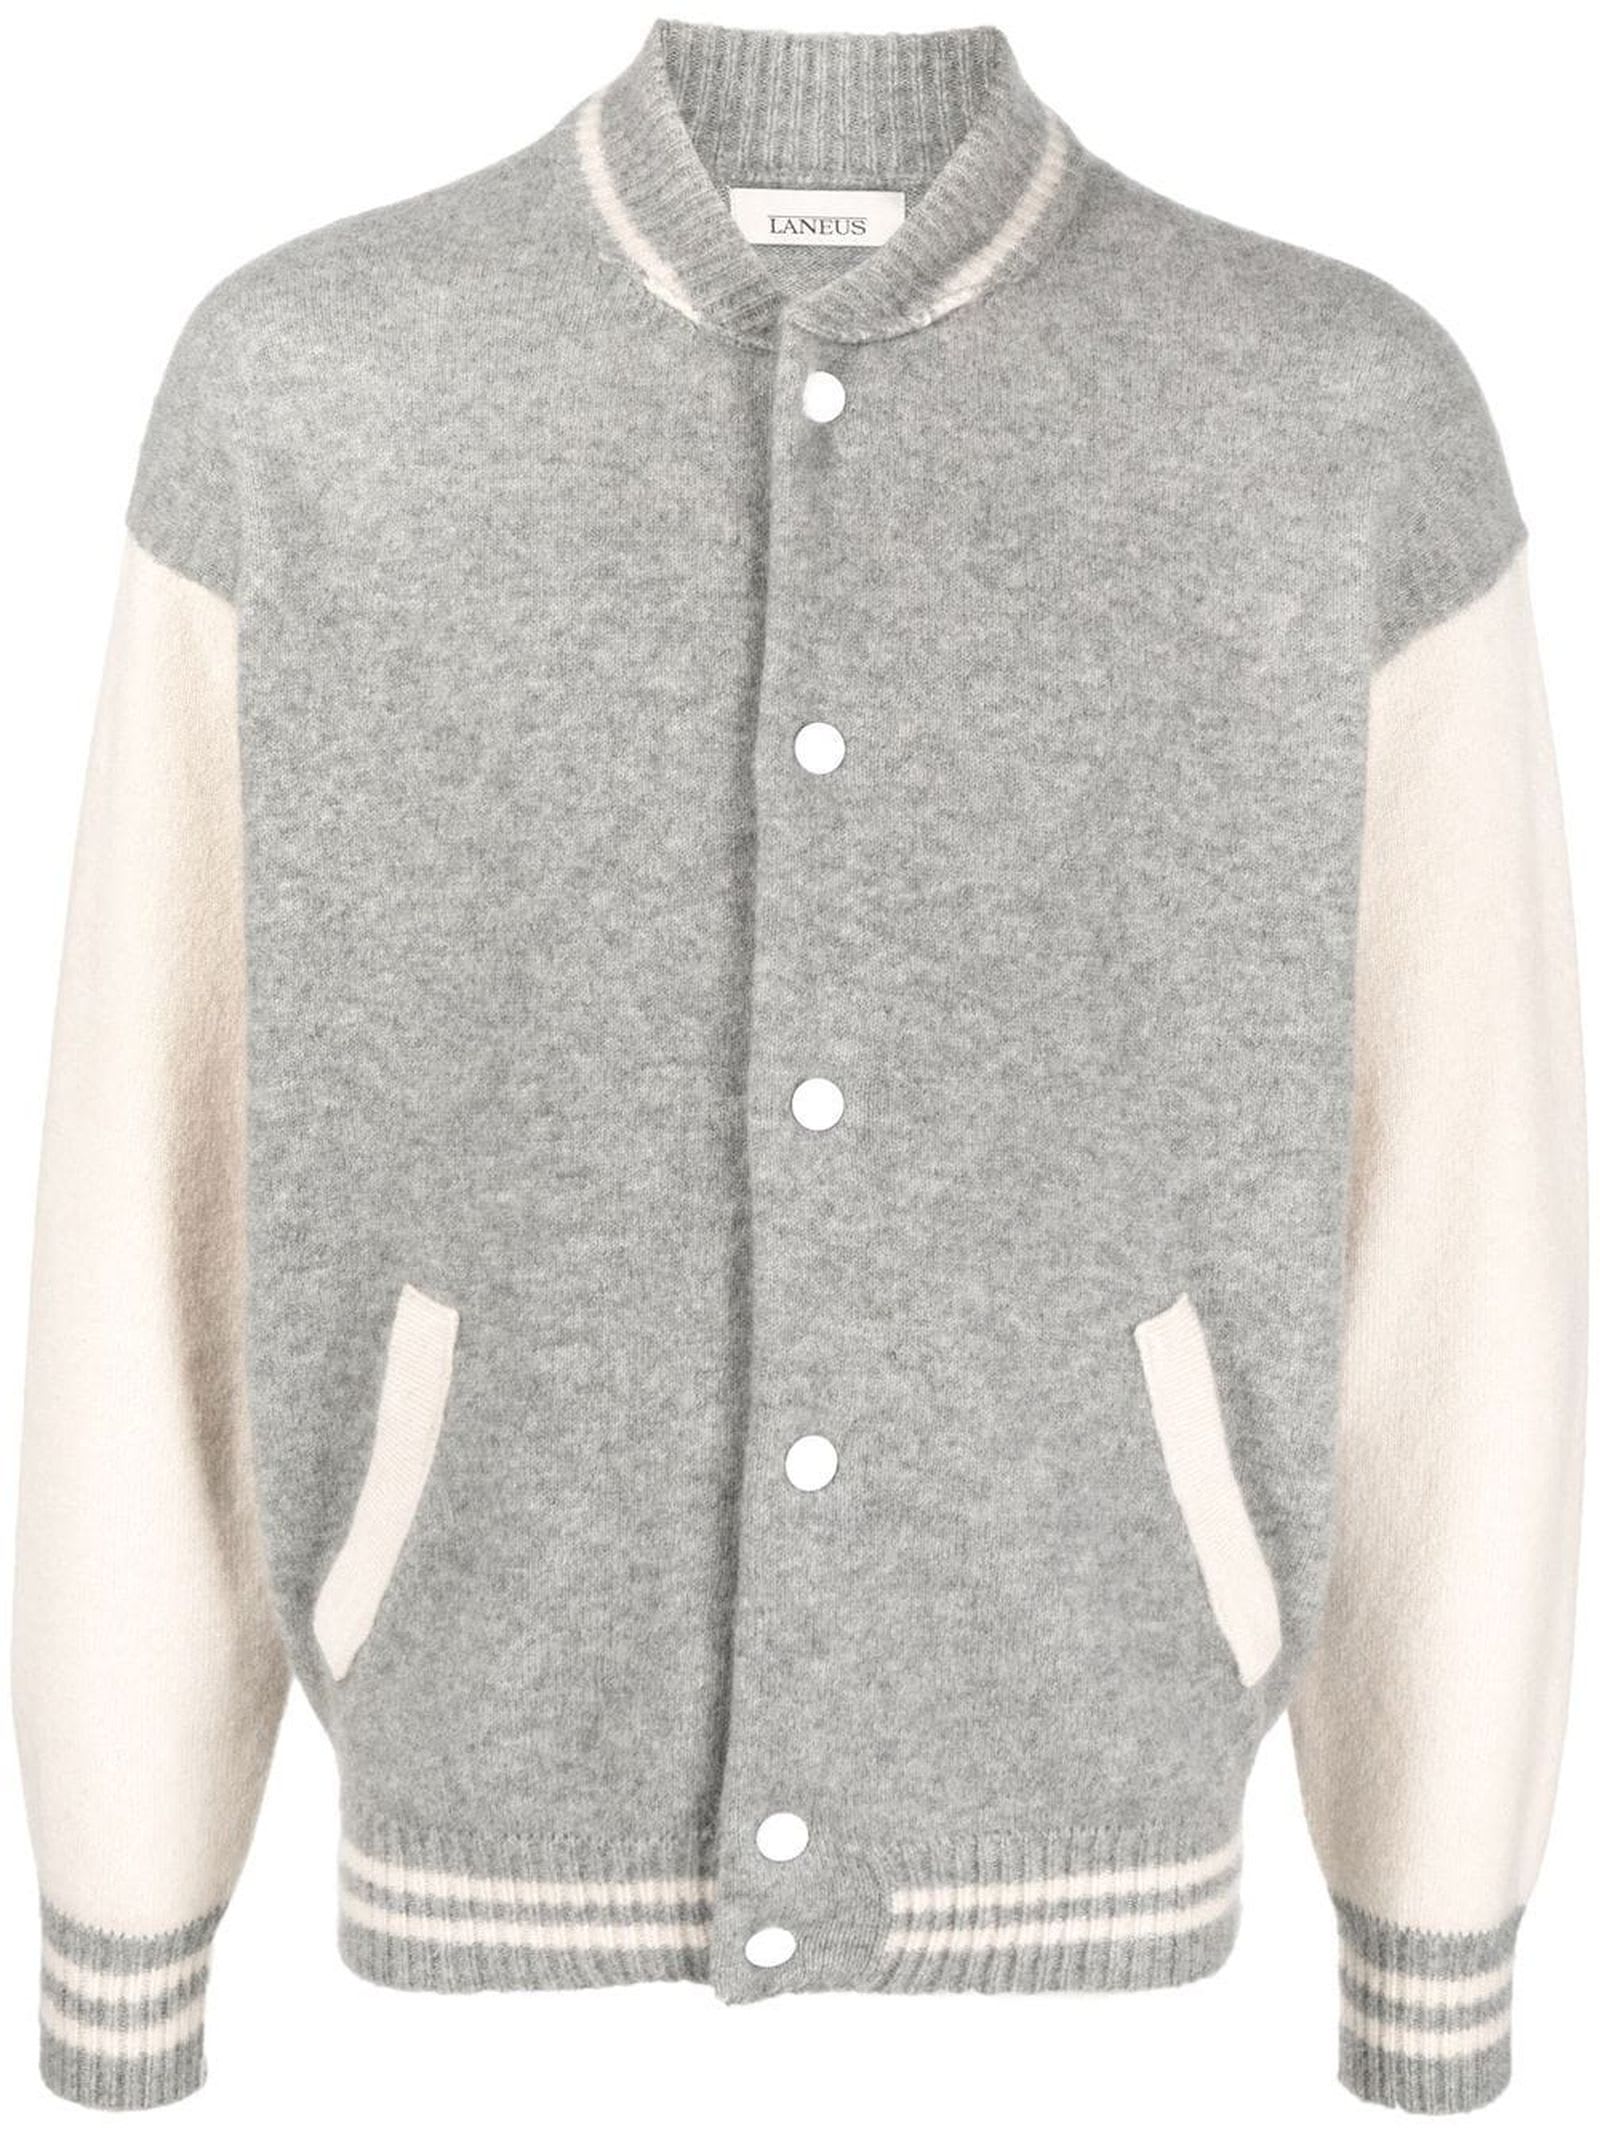 Laneus Grey And White Cashmere Blend Varsity Jacket